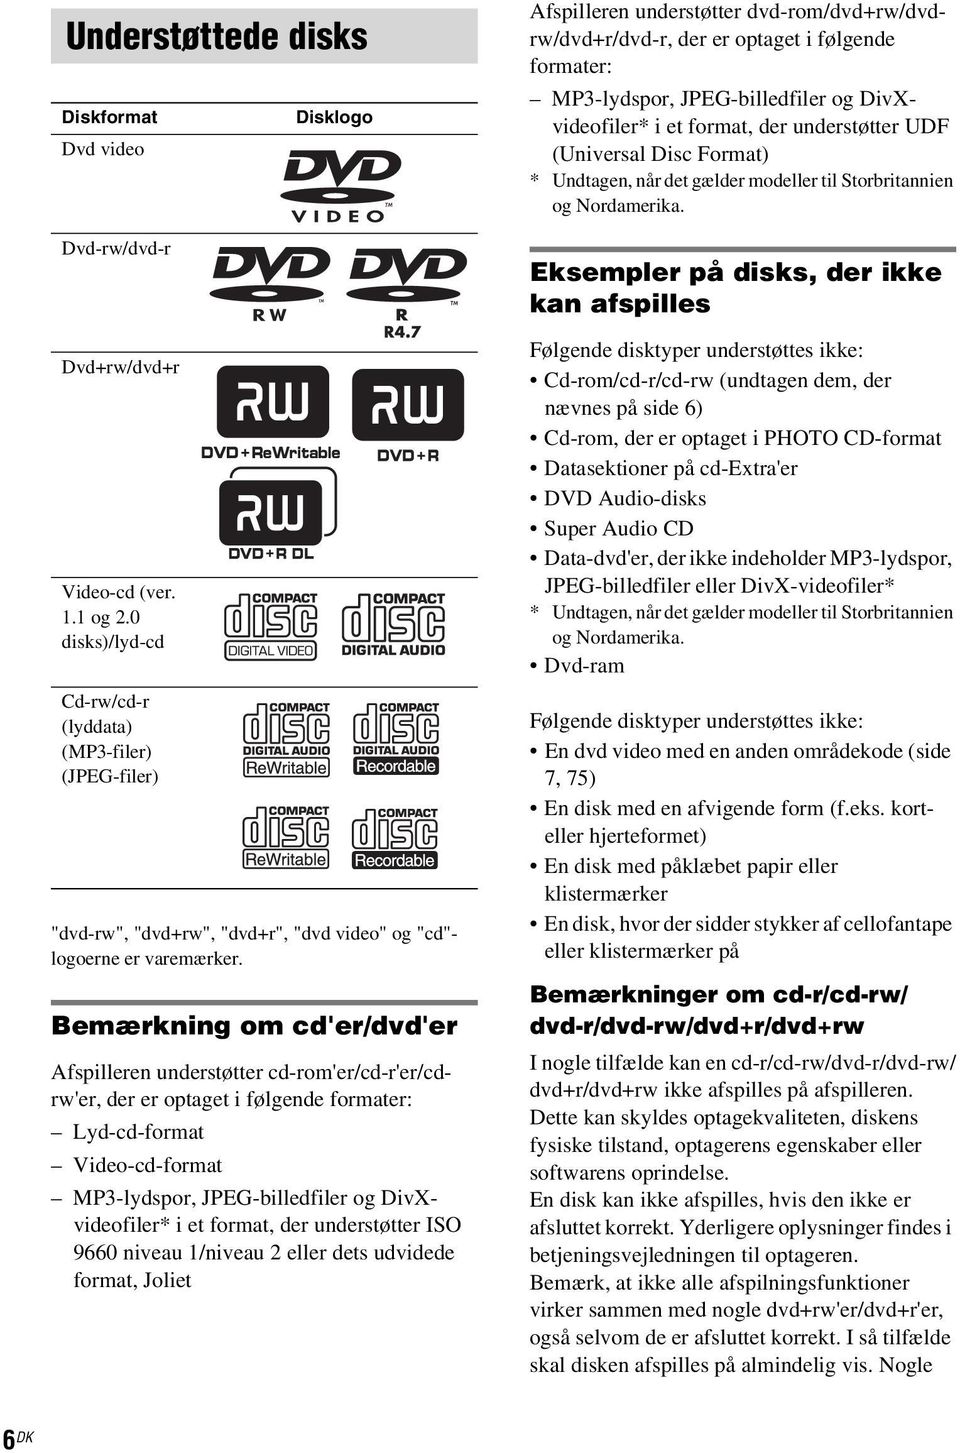 Bemærkning om cd'er/dvd'er Afspilleren understøtter cd-rom'er/cd-r'er/cdrw'er, der er optaget i følgende formater: Lyd-cd-format Video-cd-format MP3-lydspor, JPEG-billedfiler og DivXvideofiler* i et